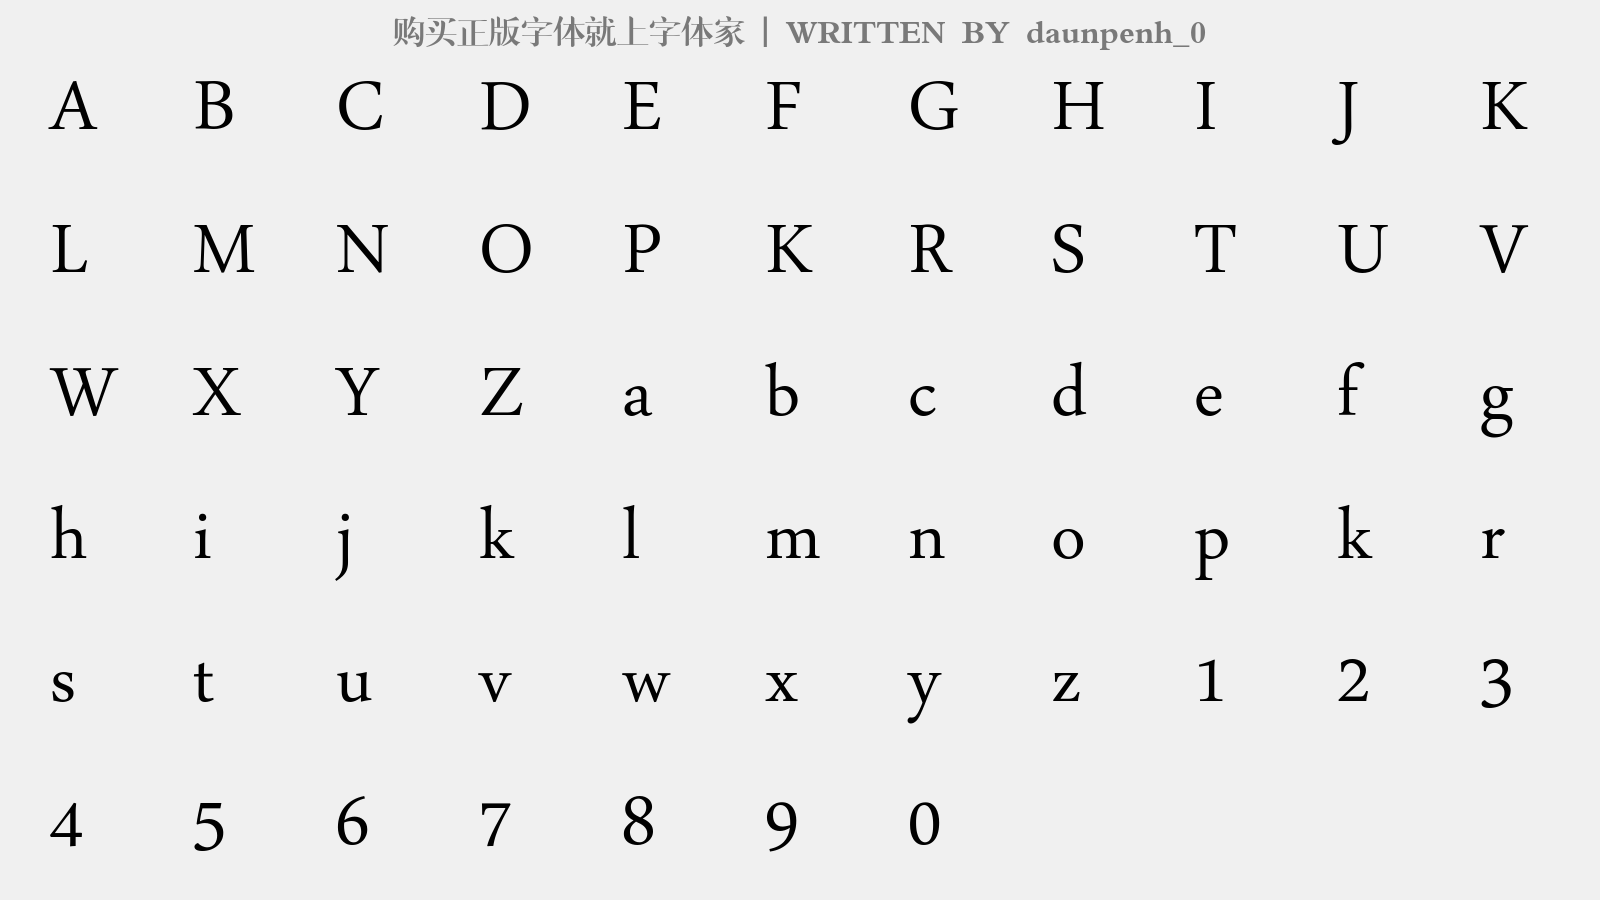 daunpenh_0 - 大写字母/小写字母/数字